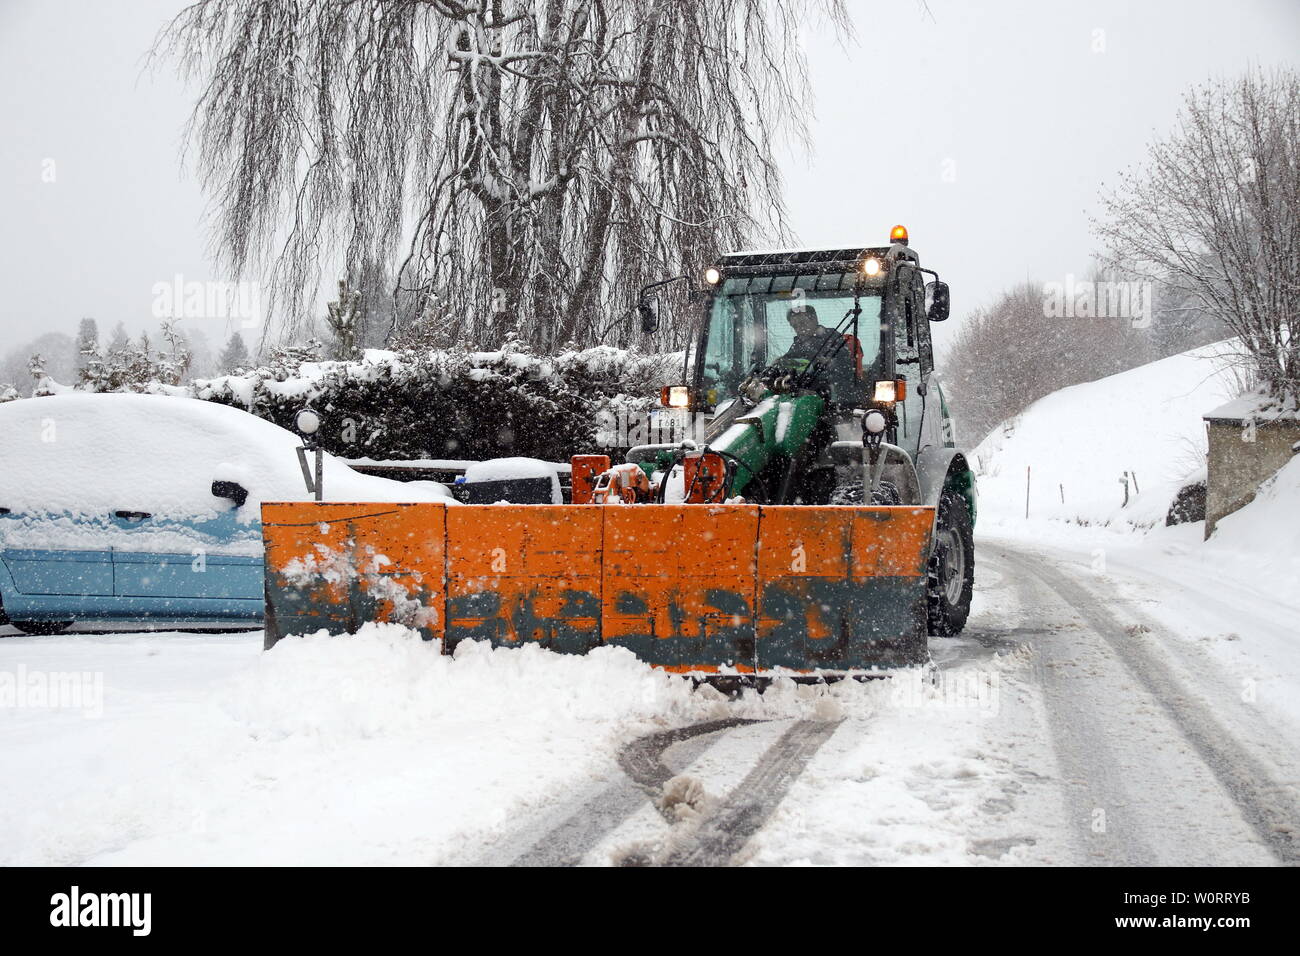 Räumfahrzeug, wie hier bei Hinterzarten beim Schneeschieben -    Wintereinbruch im Hochschwarzwald (Baden-Württemberg) - In der Feldbergregion ist der Winter mit kräftigen Schneeschauern zurückgekehrt. Wie hier in Feldberg-Bärental kommt es nach massiven Schneefällen am Samstagvormittag zu erheblichen Verkehrsproblemen. Räumfahrzeuge sind im Einsatz, doch die steckengebliebenen Autofahrer verhindern die Räumarbeiten. Busse mussten Schneeketten montieren, querstehende LKW´s mit glatten Reifen taten ihr übriges. Stock Photo